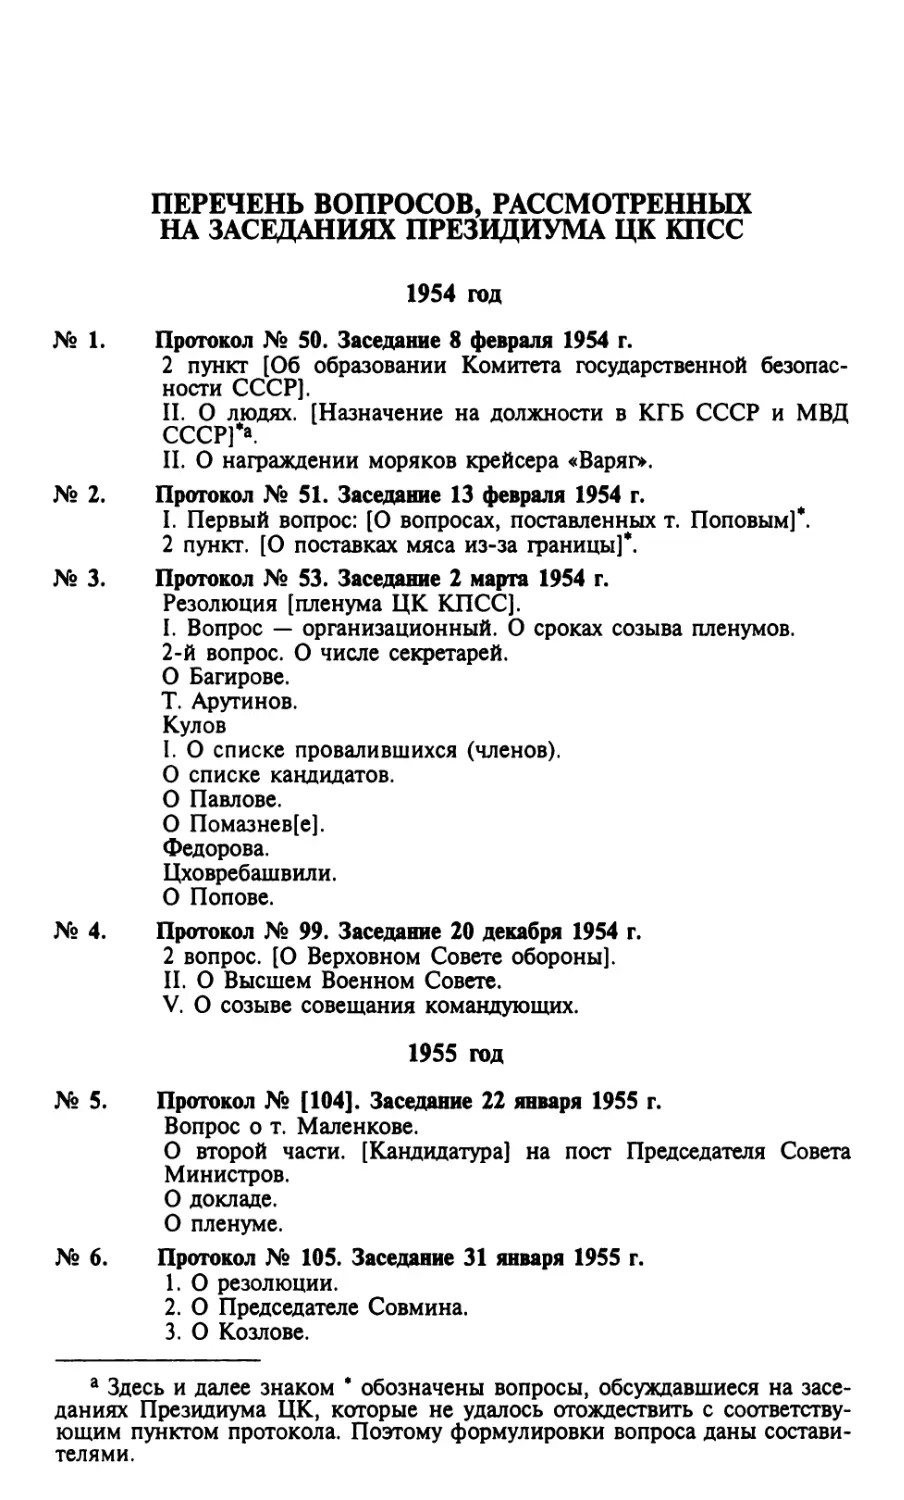 Перечень вопросов, рассмотренных на заседаниях президиума ЦК КПСС
1955 год